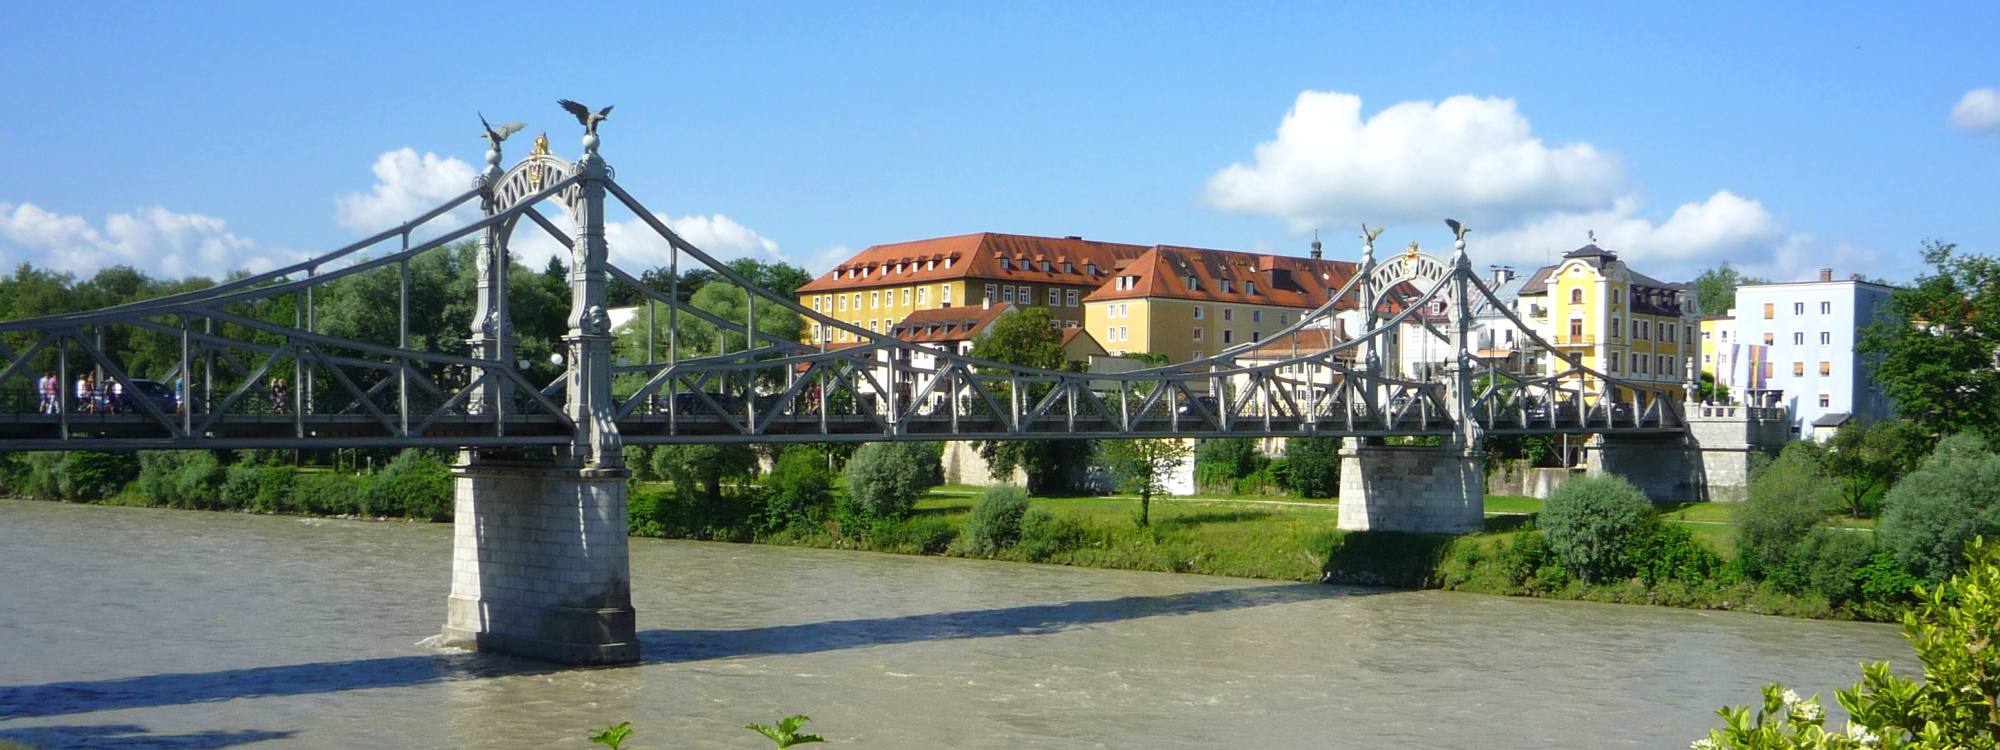 Länderbrücke zwischen Laufen und Oberndorf mit Schloß Laufen im Hintergrund